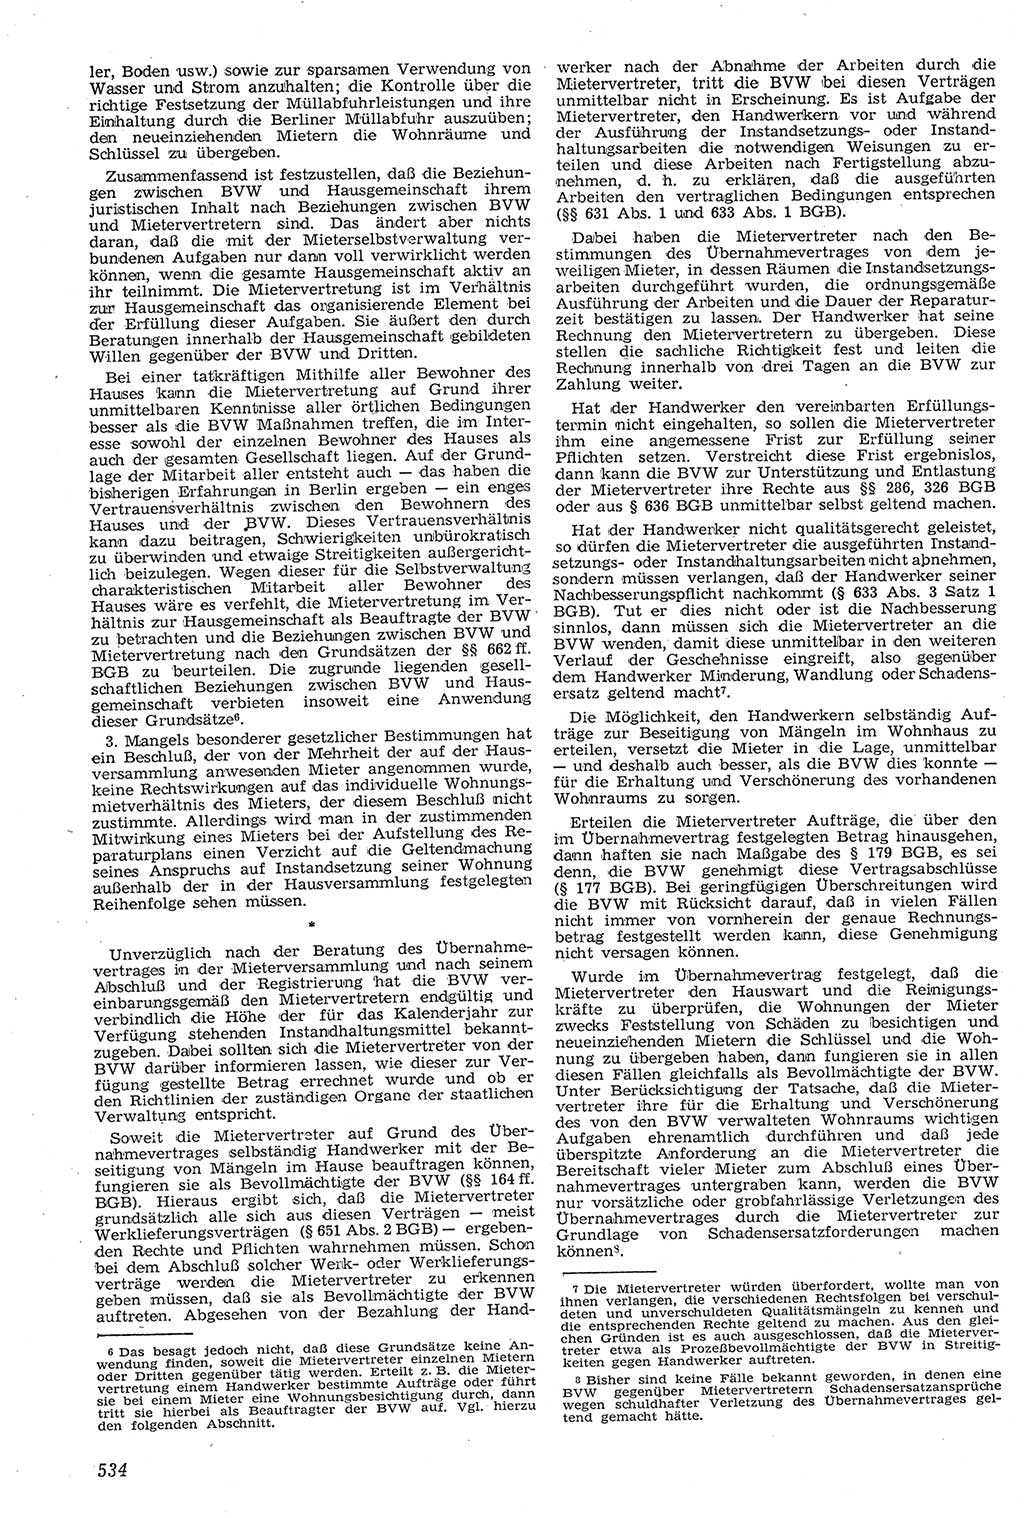 Neue Justiz (NJ), Zeitschrift für Recht und Rechtswissenschaft [Deutsche Demokratische Republik (DDR)], 11. Jahrgang 1957, Seite 534 (NJ DDR 1957, S. 534)